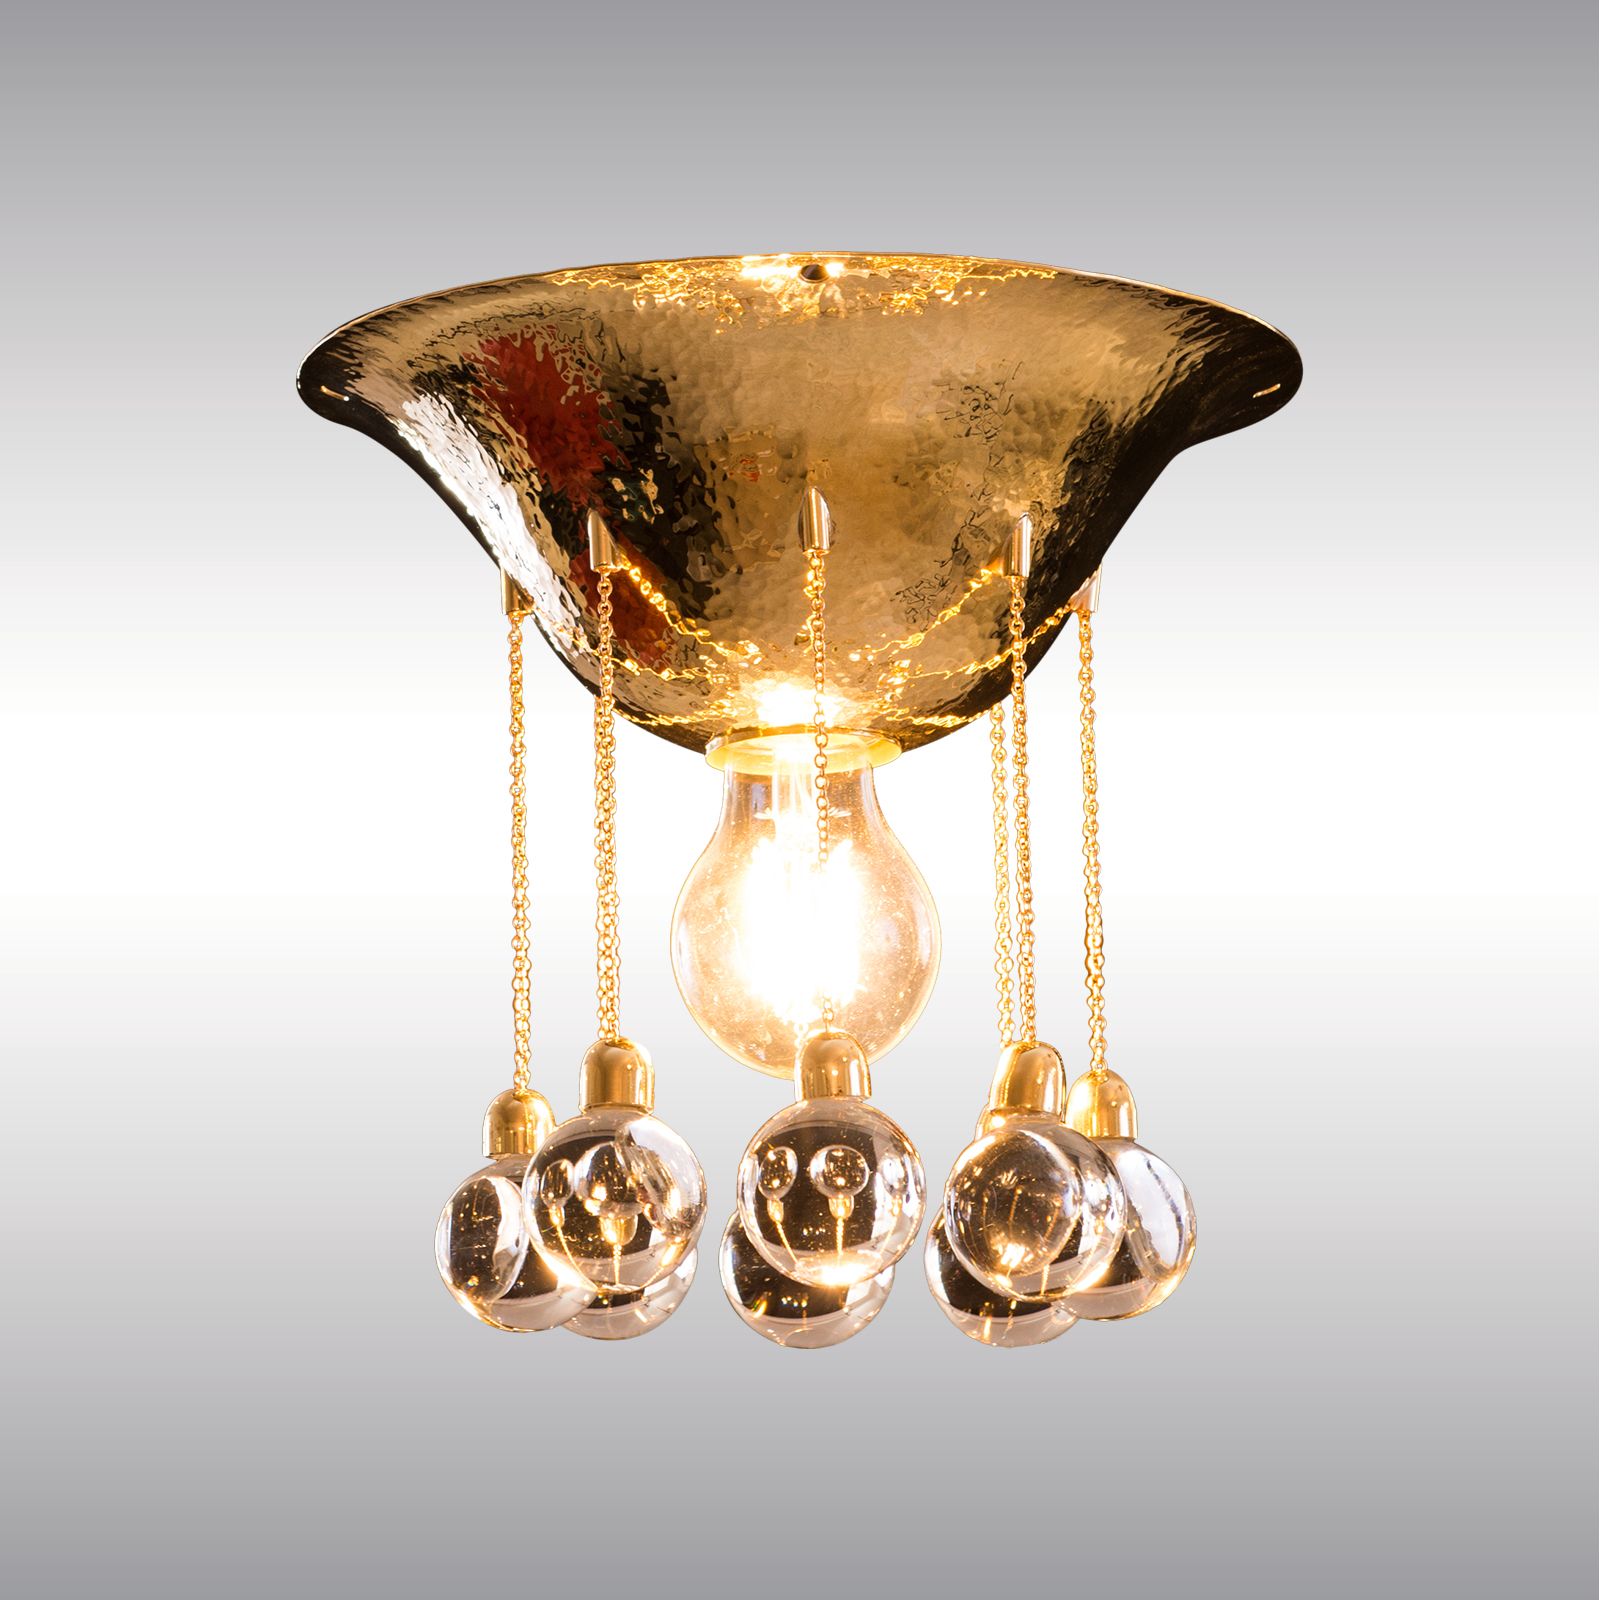 WOKA LAMPS VIENNA - OrderNr.: 22106|Flush mount Hoffmann Wittgenstein 1906 - Design: Josef Hoffmann